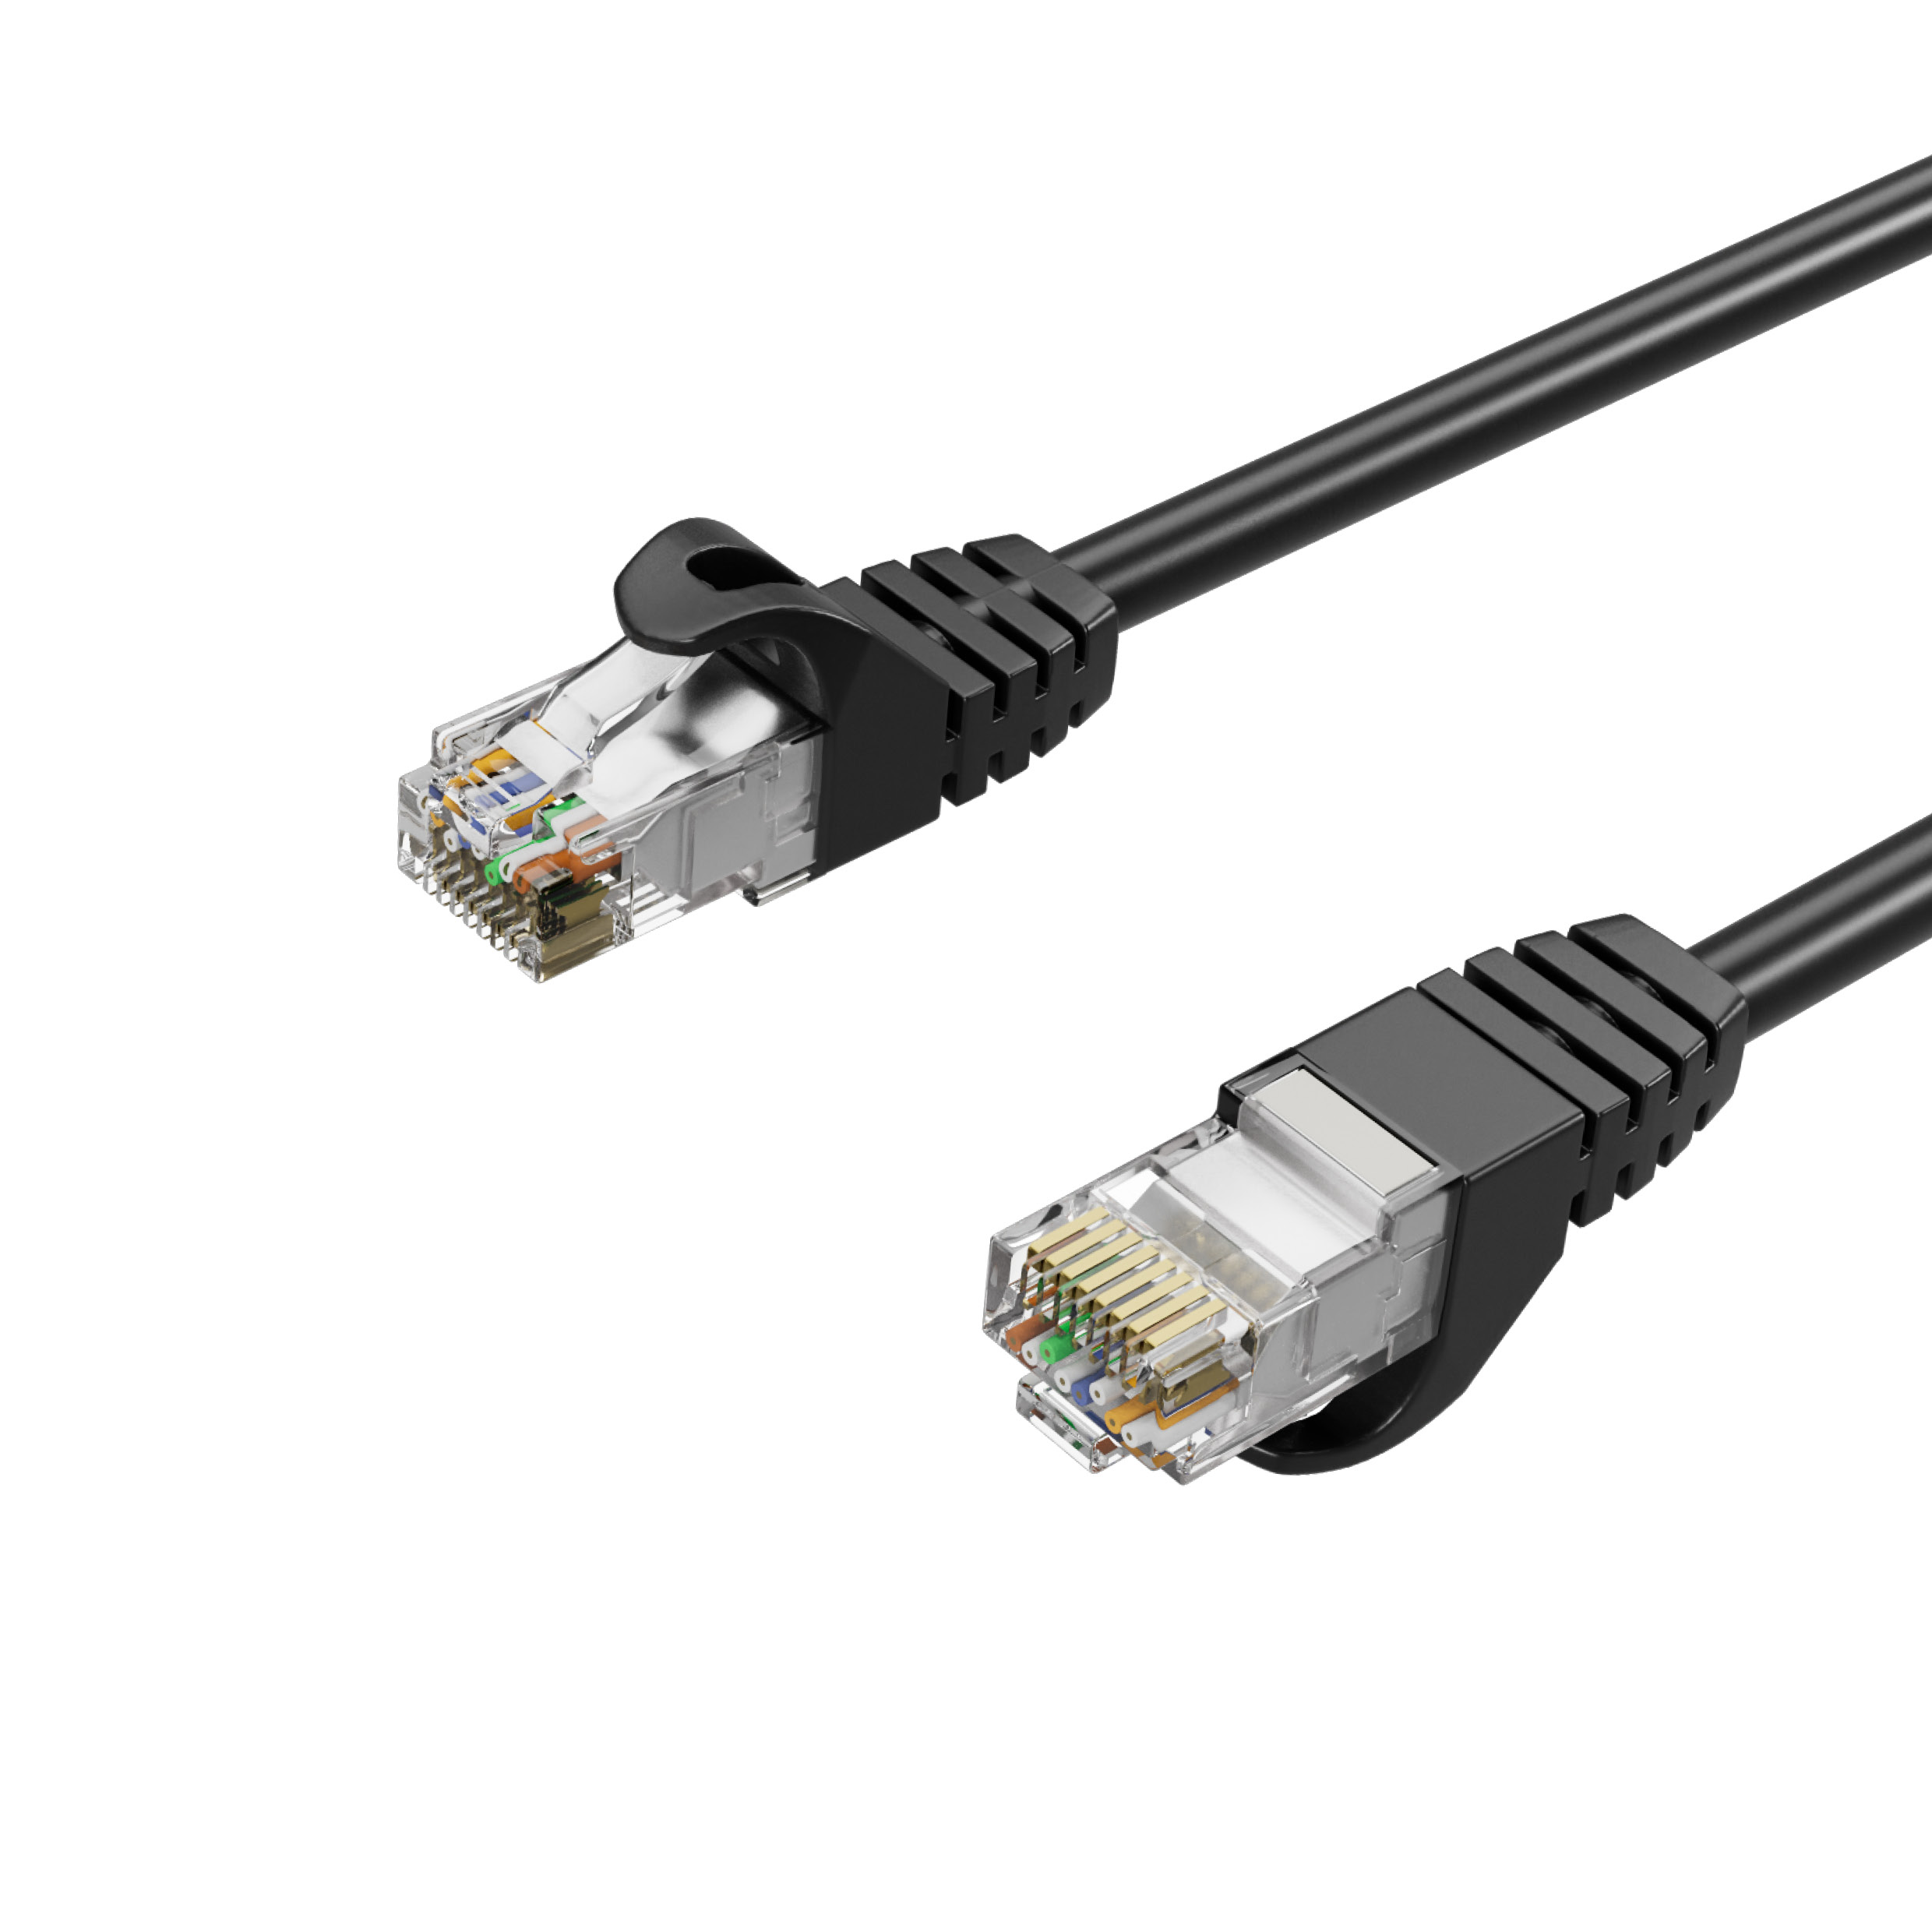 KABELBUDE Netzwerkkabel, Cat. Patchkabel RJ45, Kabel, Ethernet 5m schwarz, U/UTP 7 RJ45 5 m Lan-Kabel